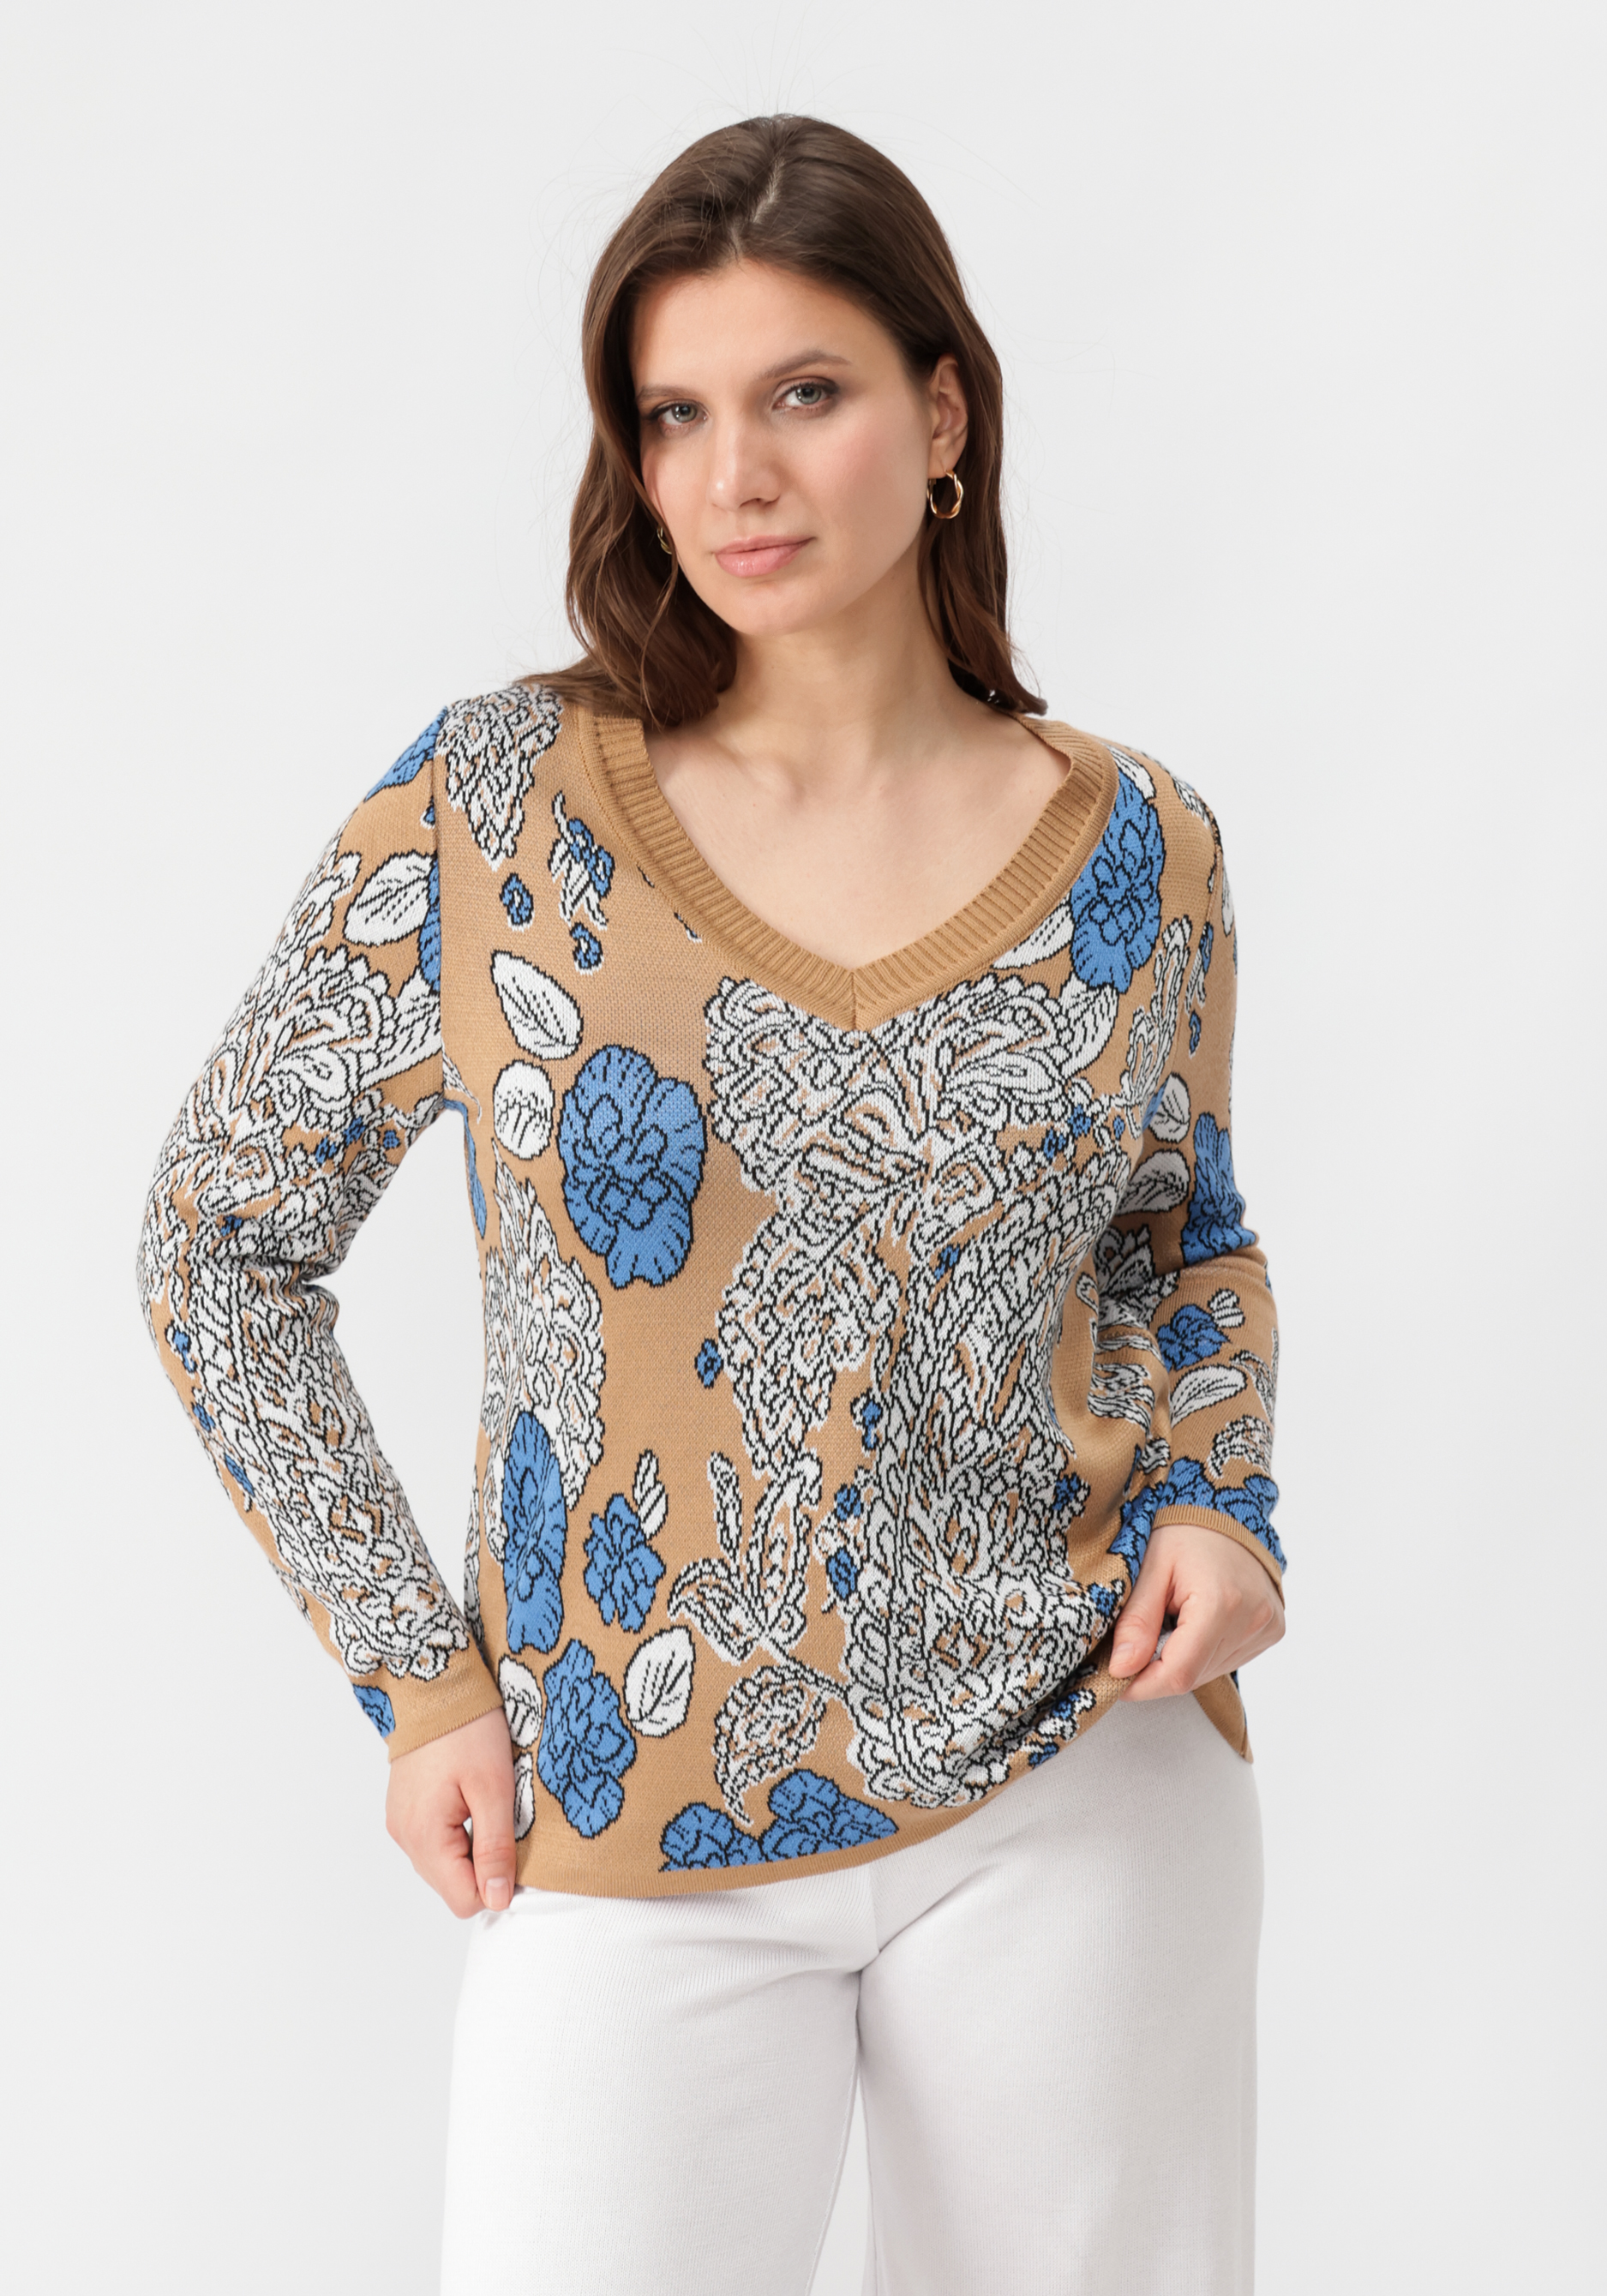 Пуловер с V-образным вырезом, цветным принтом Vivawool, размер 48